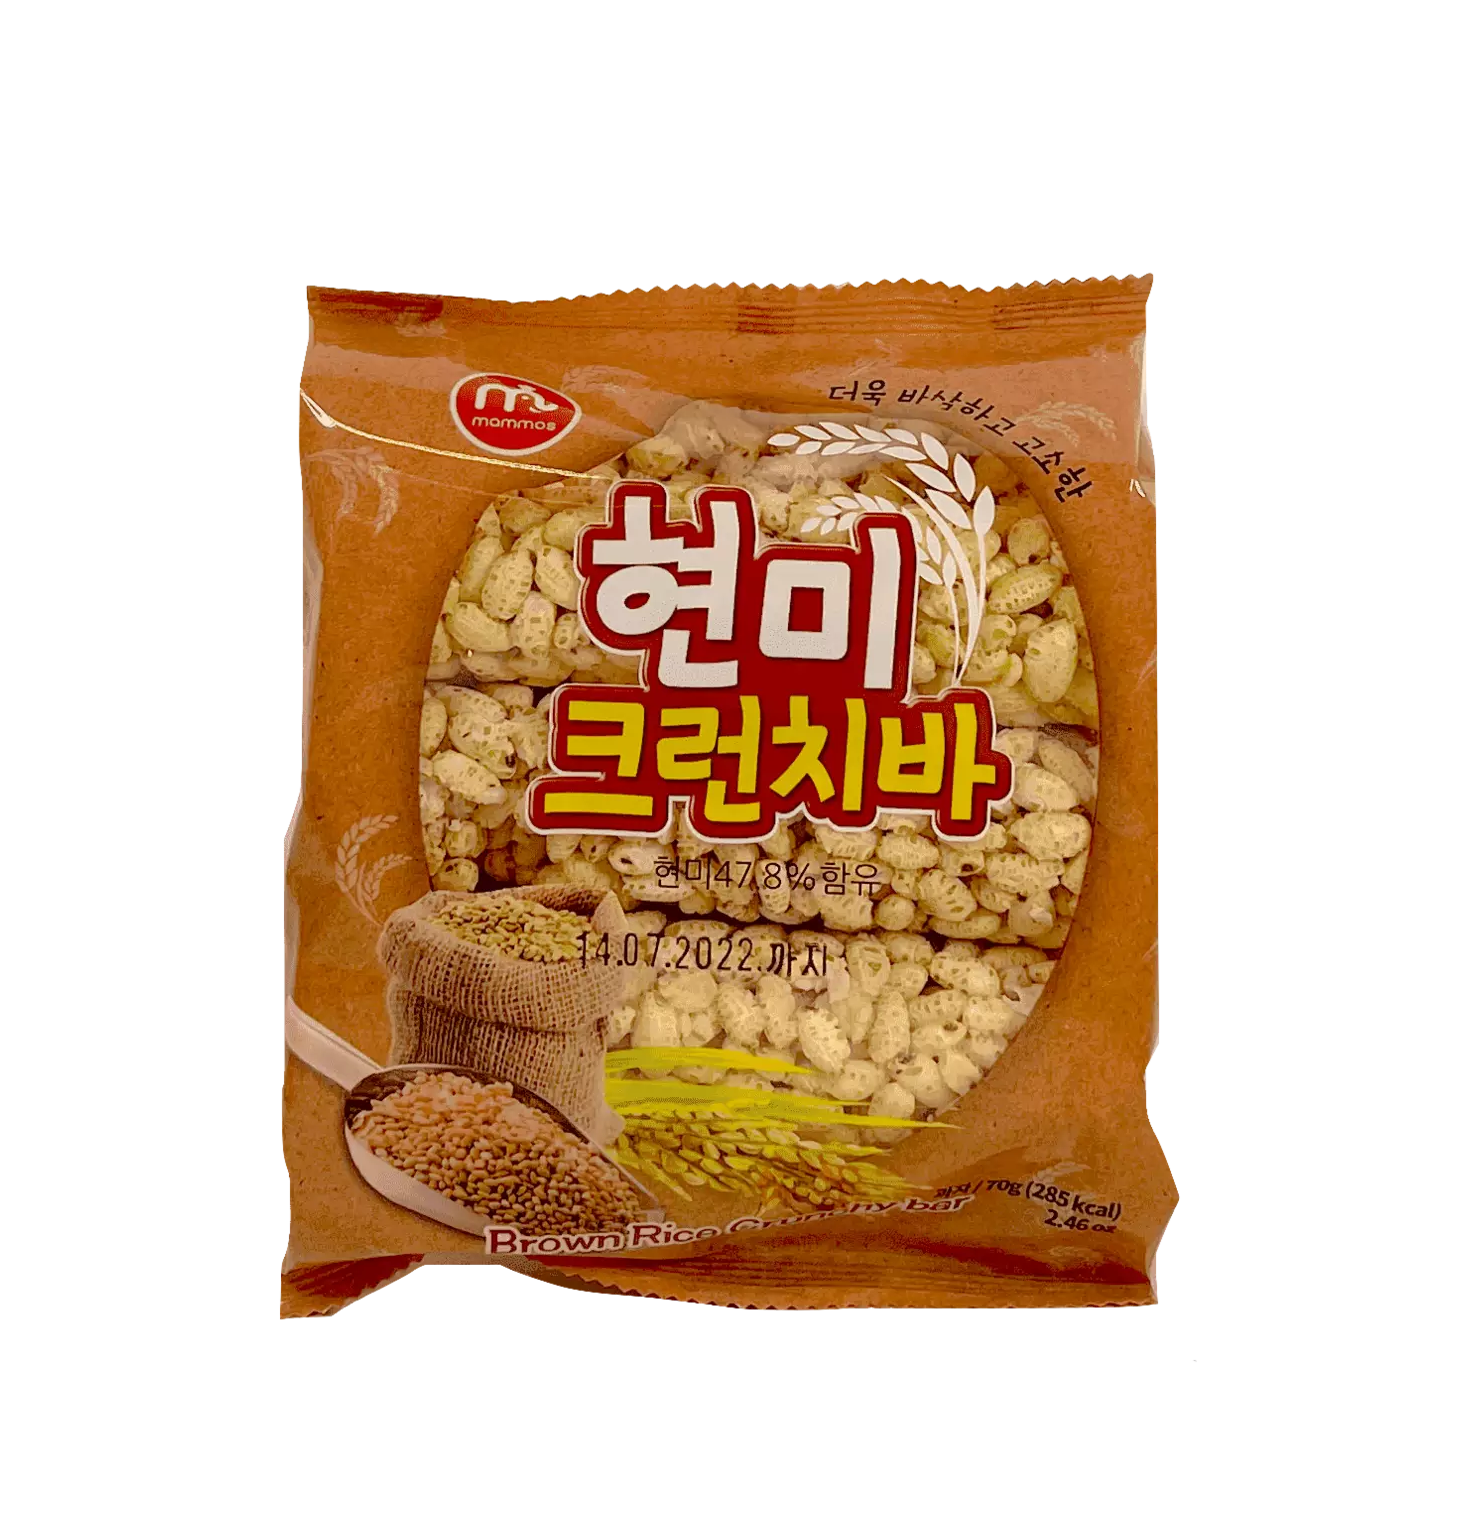 糙米饼干 70g Mammos 韩国